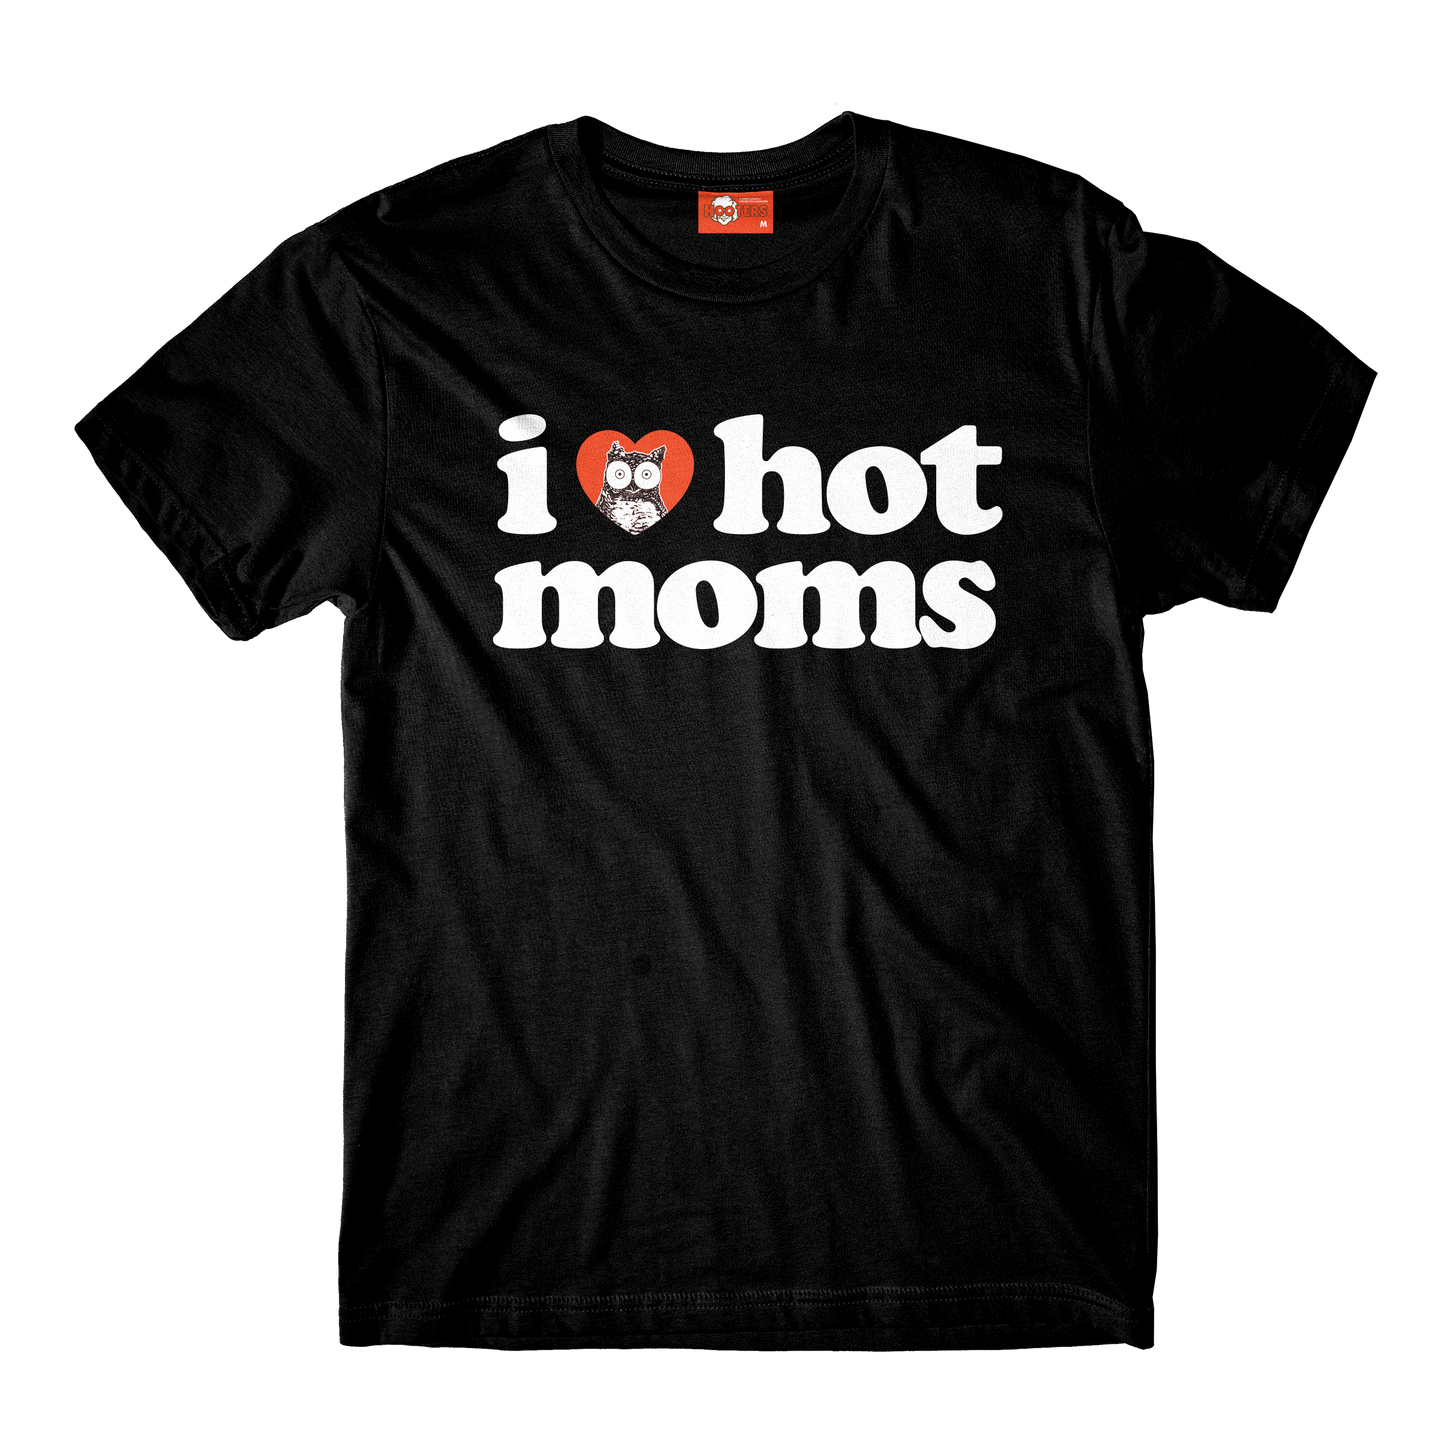 I Heart Hot Moms x Hooters Black Tee